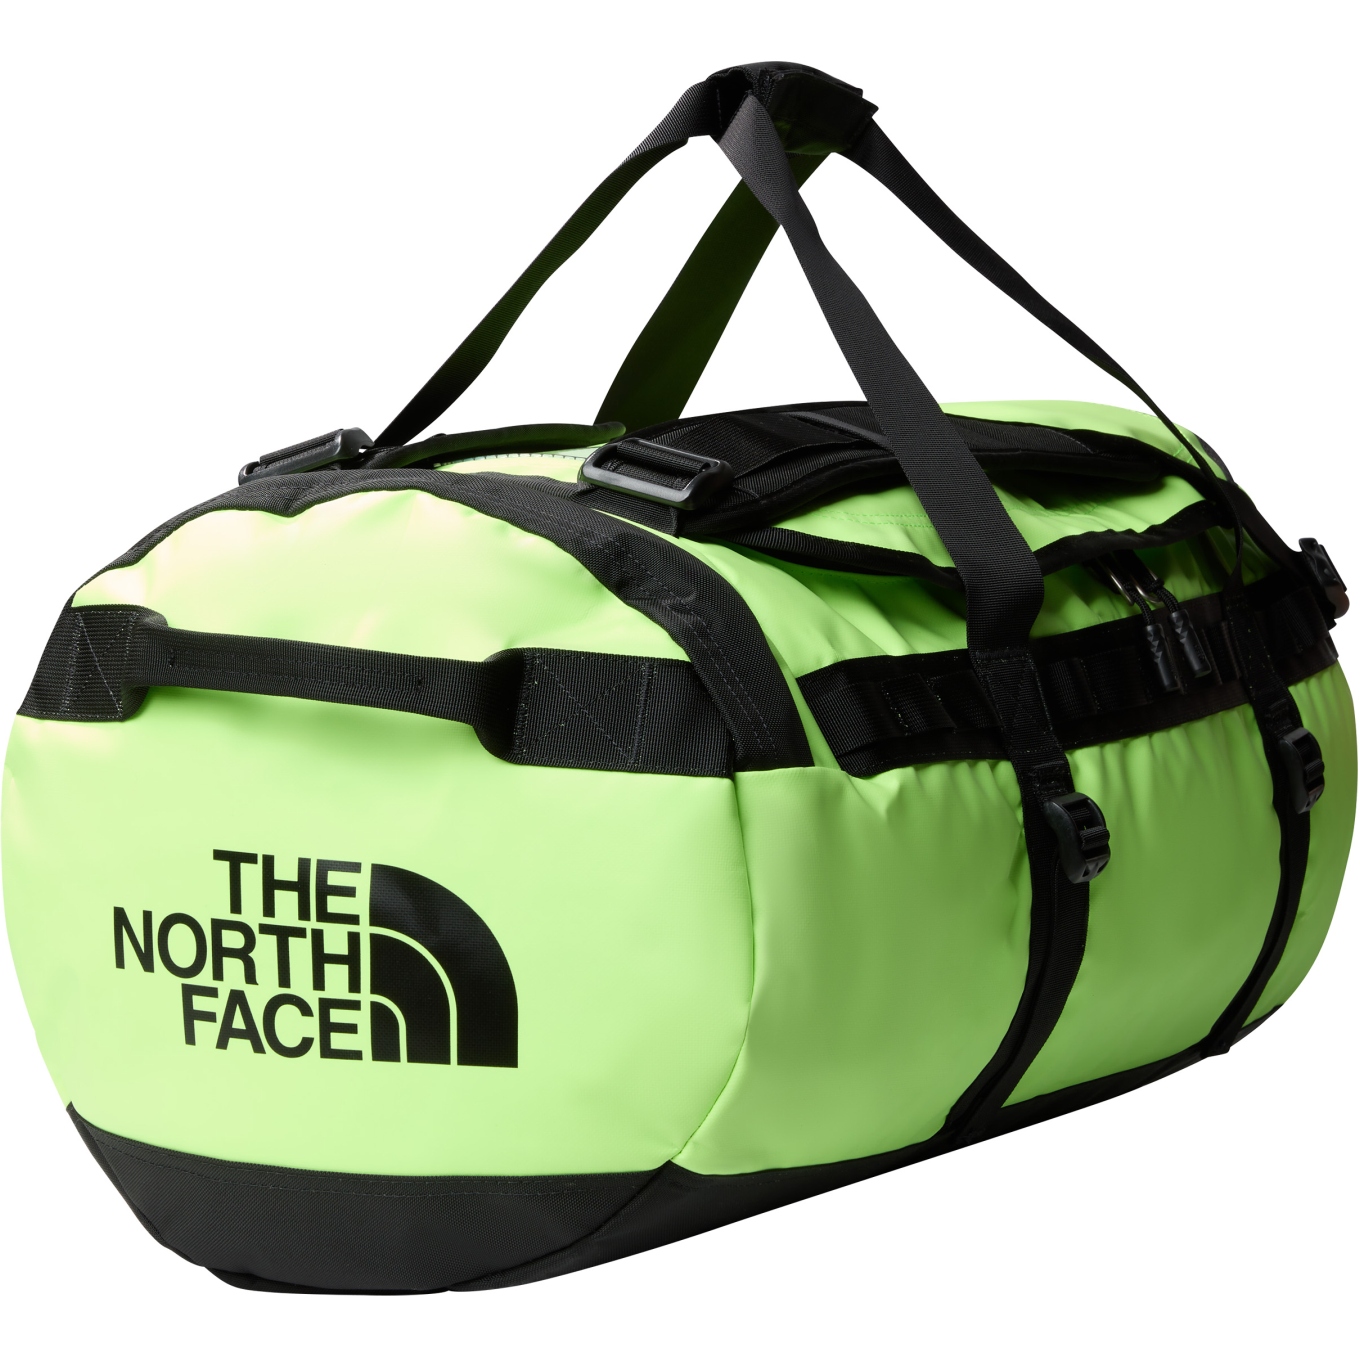 Produktbild von The North Face Base Camp Duffel Reisetasche - Medium - Safety Green/TNF Black